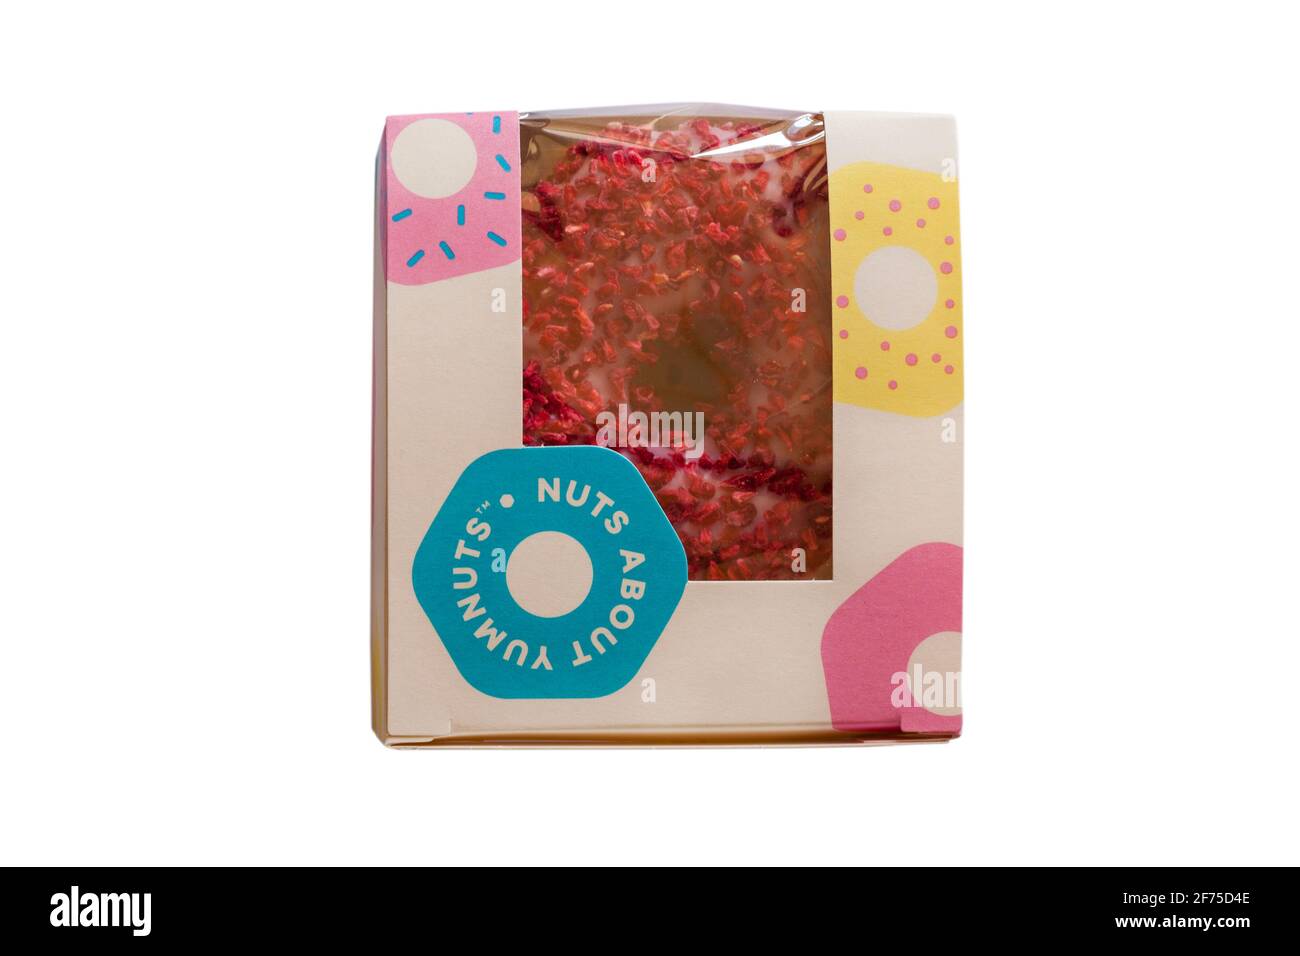 Raspberry Royale Yumnut, croisez un beignet et un yum yum dans une boîte, de la boulangerie M&S en magasin Banque D'Images